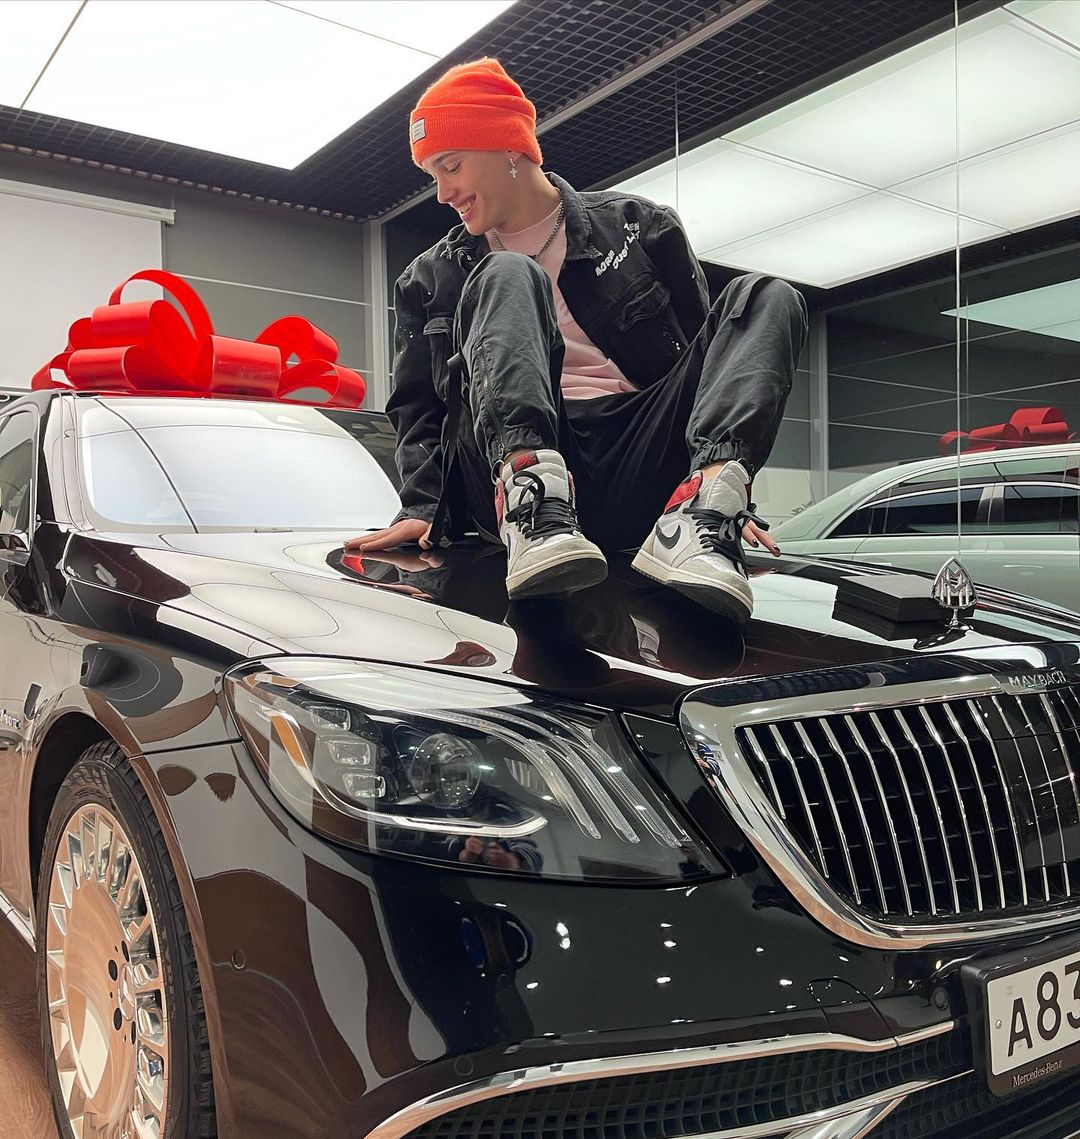 Даня Милохин купил люксовый автомобиль стоимостью свыше 10 миллионов рублей